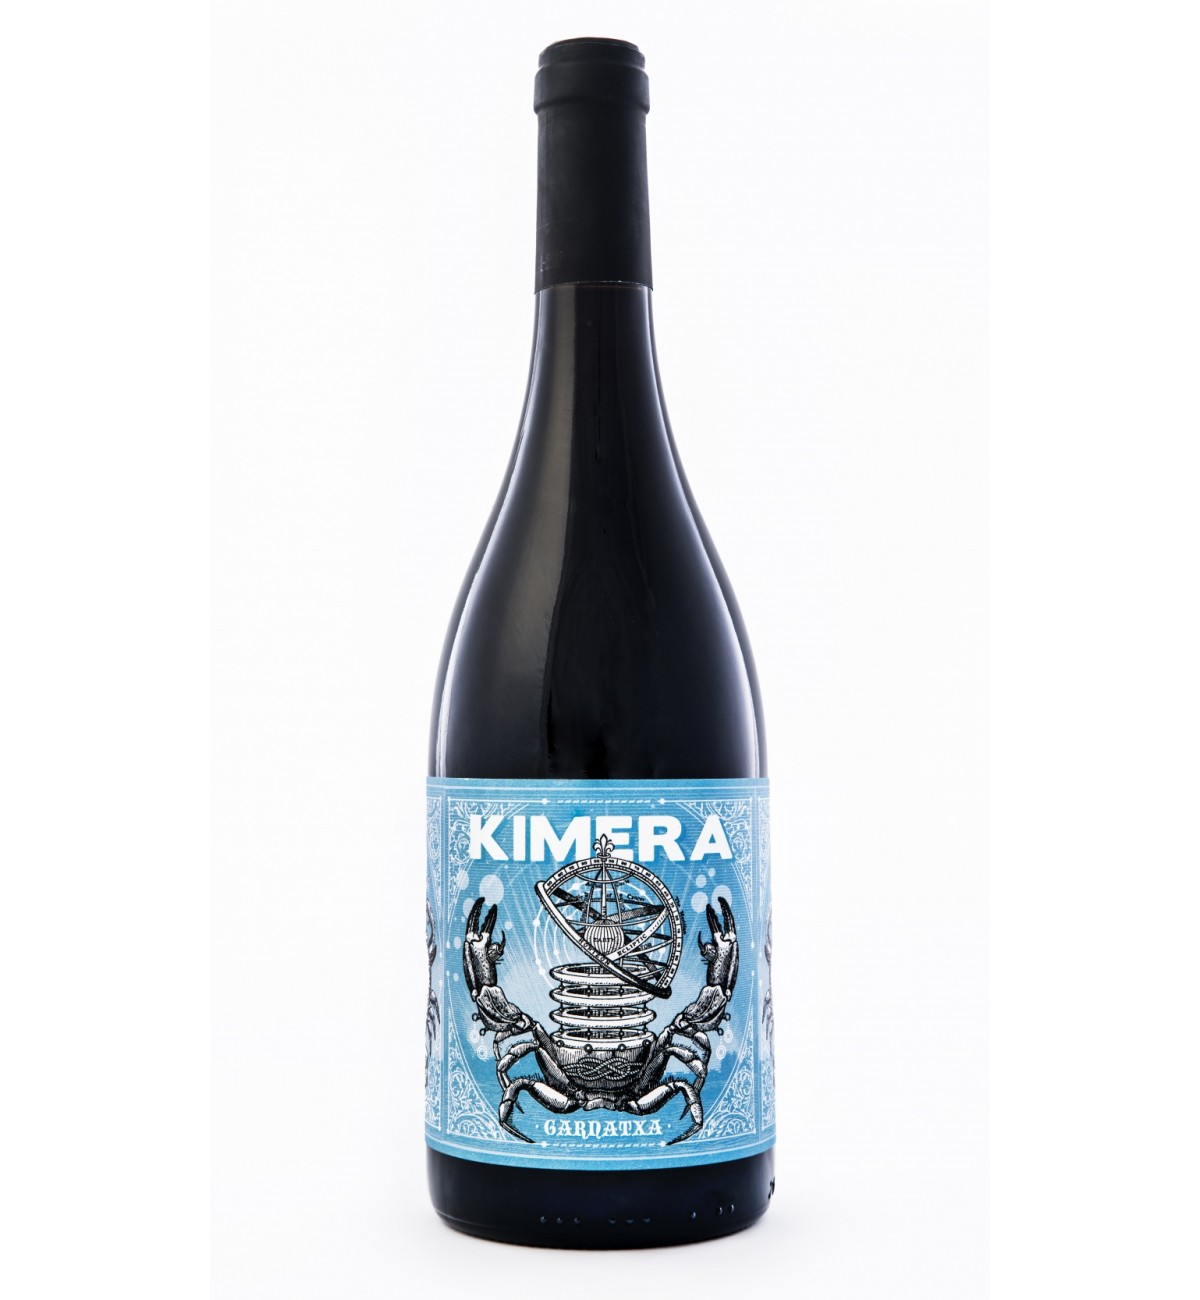 Kimera 2017 - LMT wines - Garnatxa, viñas viejas, Navarra